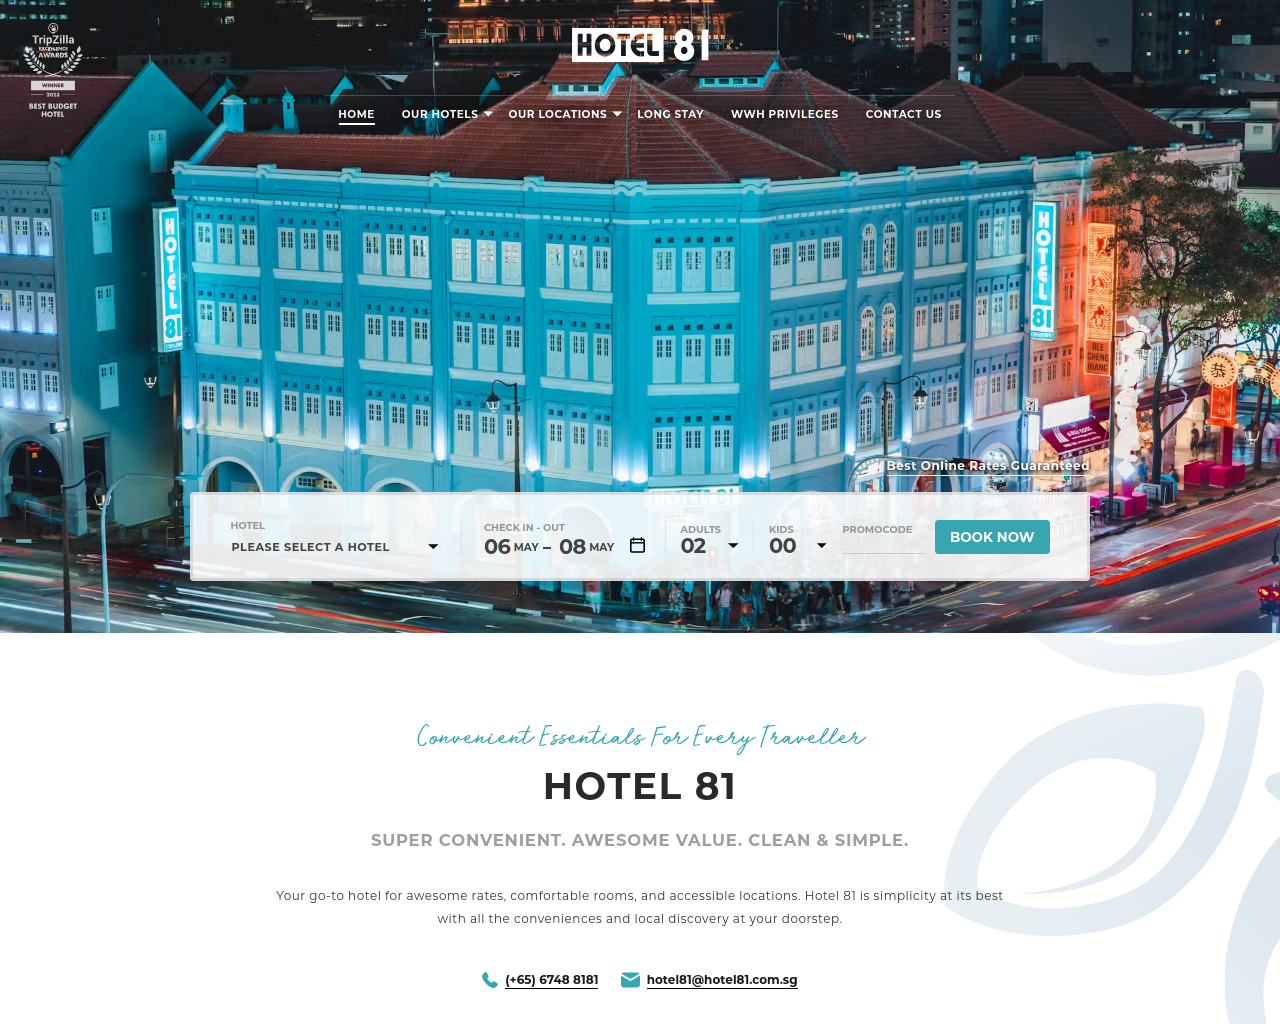 hotel81.com.sg